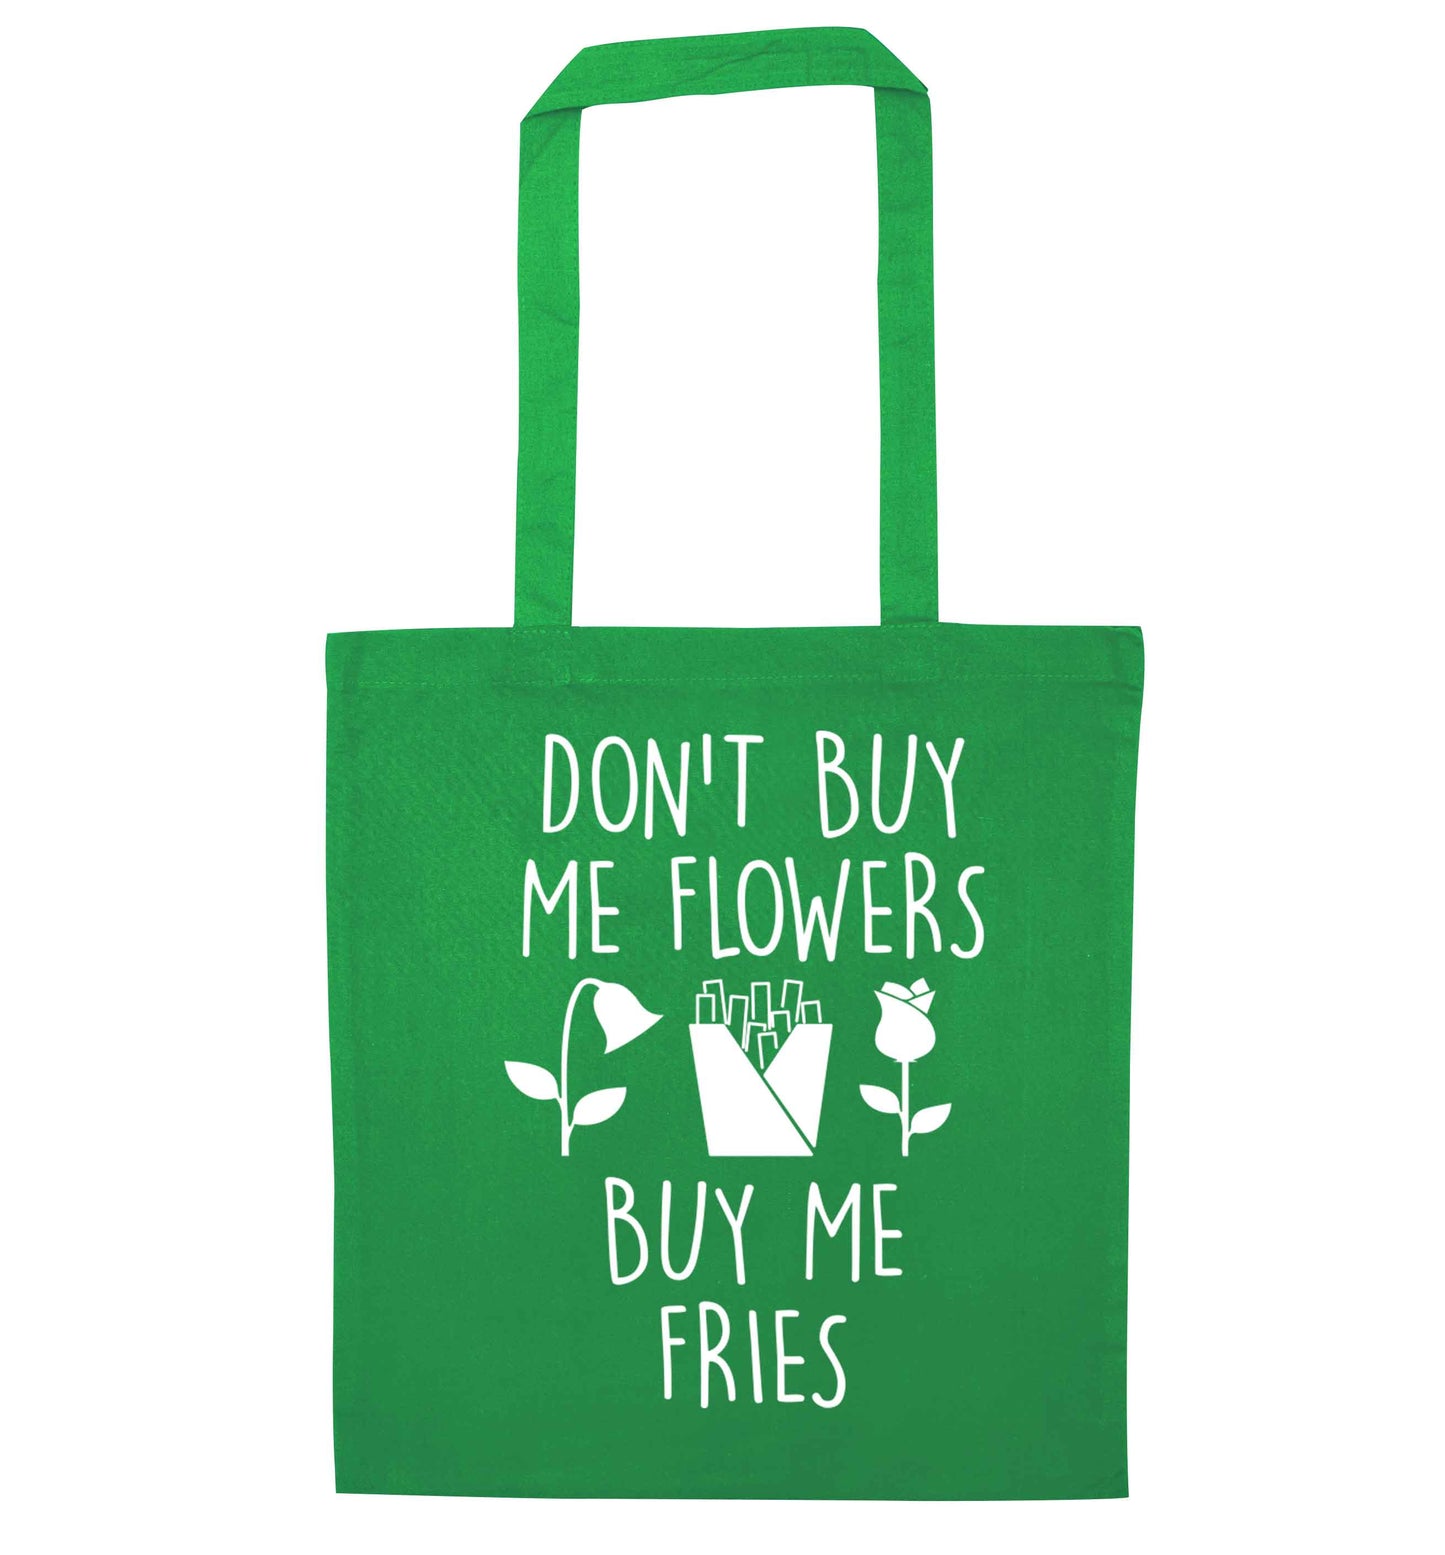 Don't buy me flowers buy me fries green tote bag